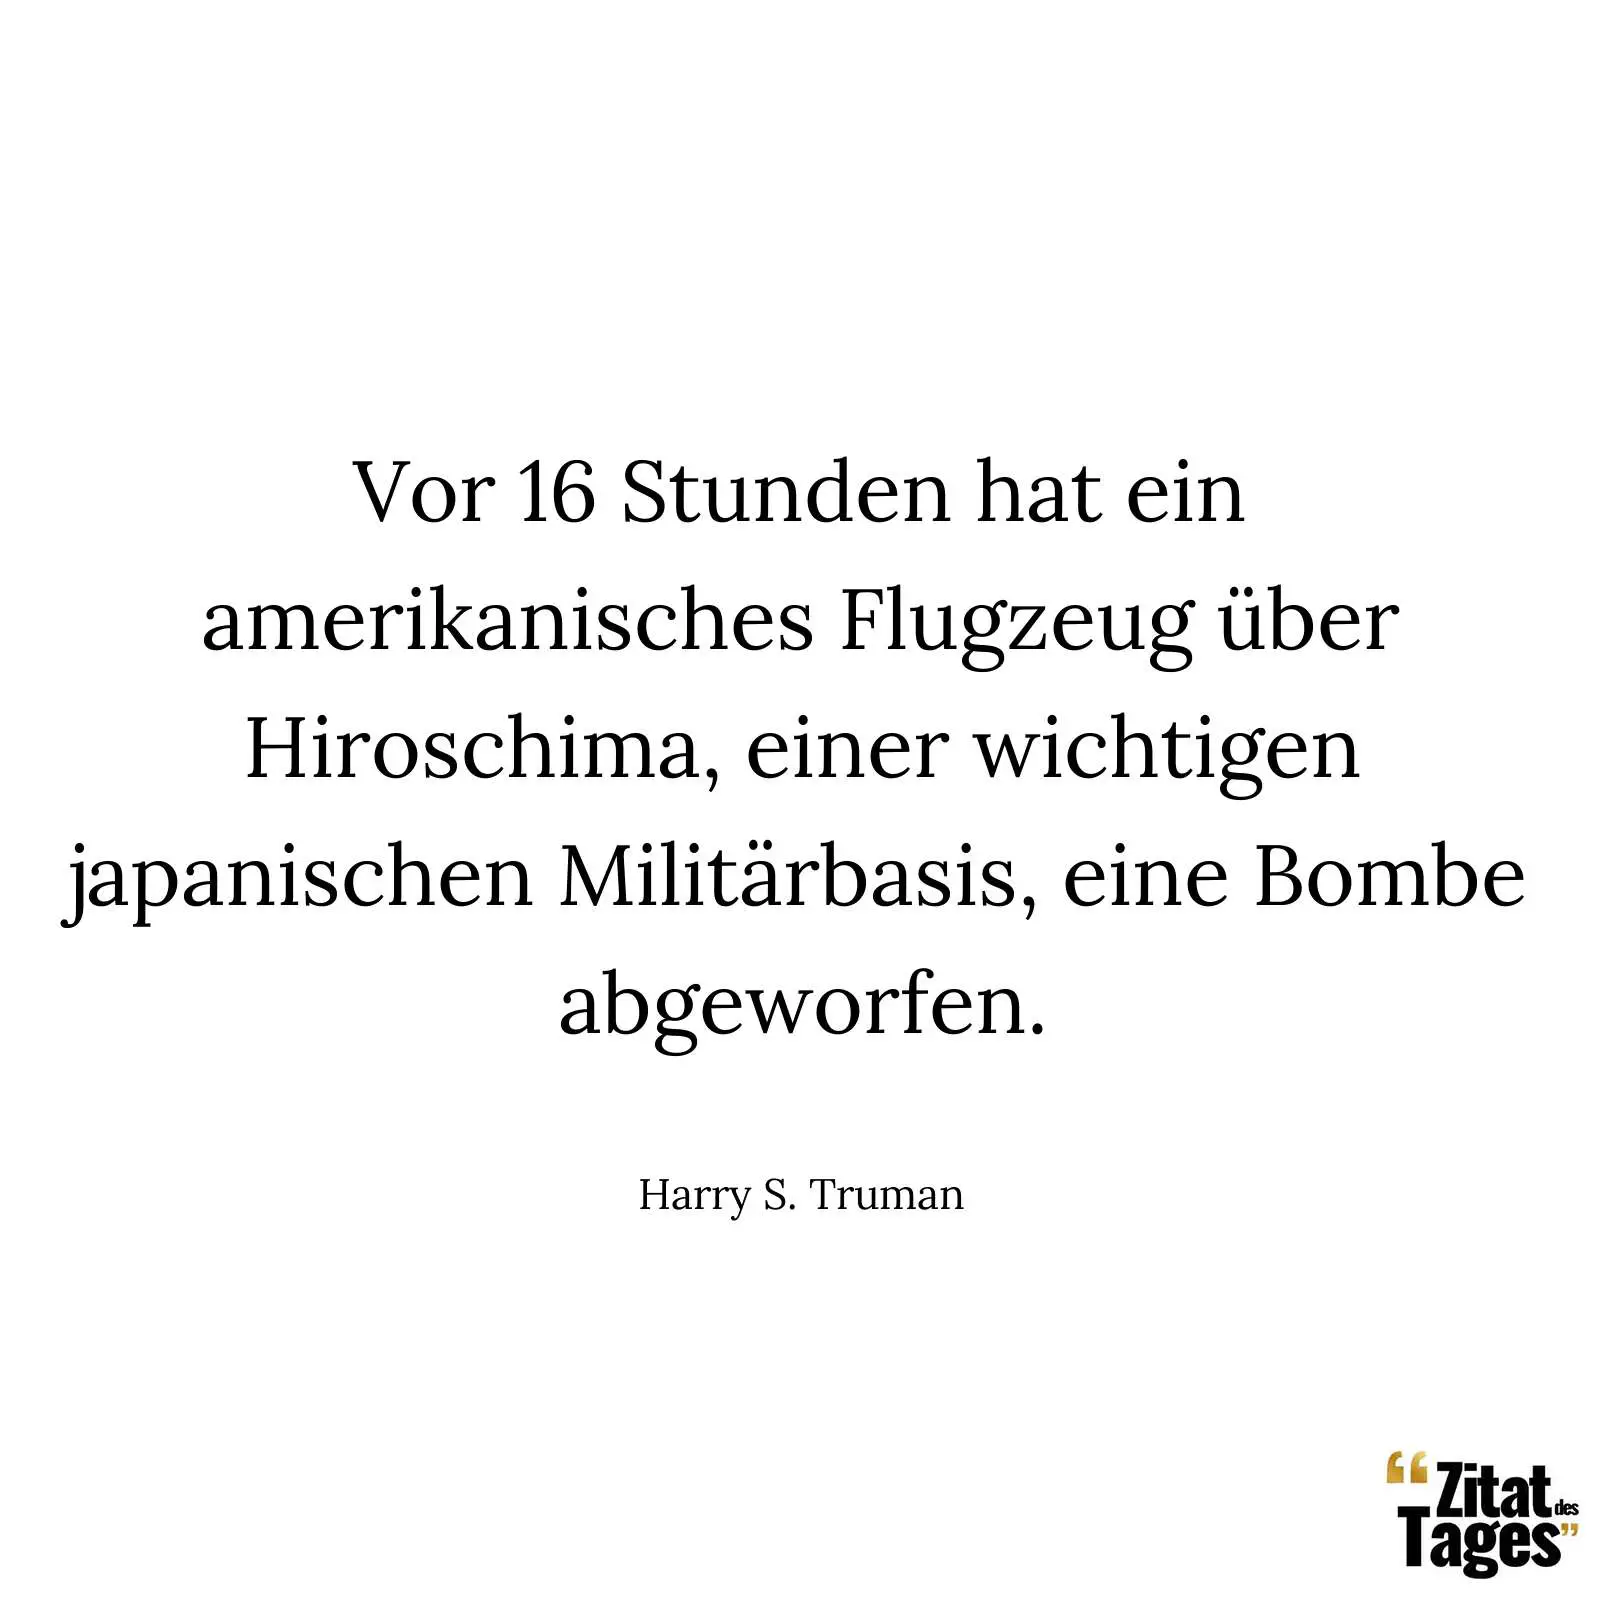 Vor 16 Stunden hat ein amerikanisches Flugzeug über Hiroschima, einer wichtigen japanischen Militärbasis, eine Bombe abgeworfen. - Harry S. Truman